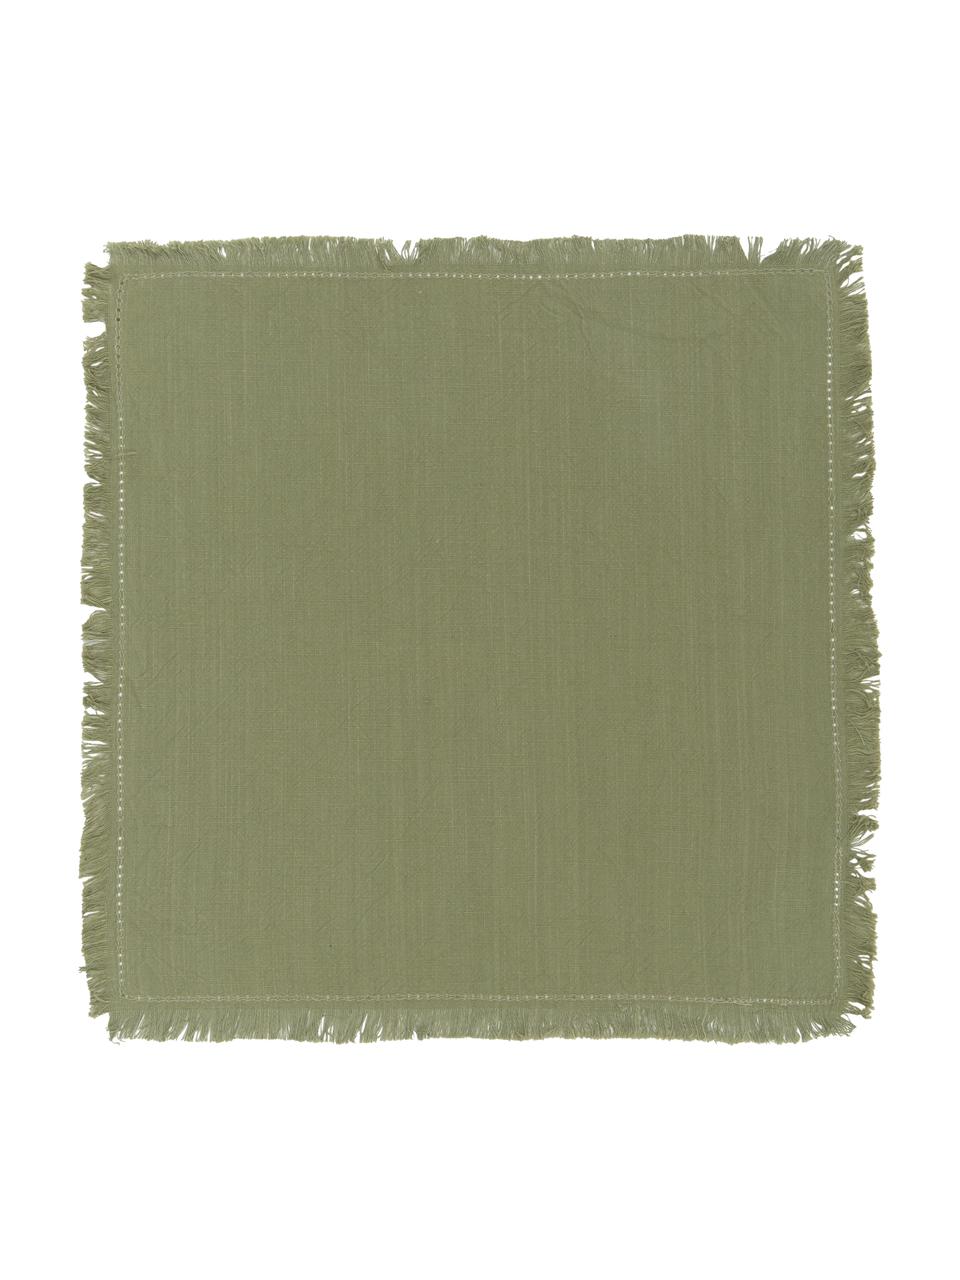 Baumwoll-Servietten Hilma mit Fransen, 2 Stück, Baumwolle, Olivgrün, 45 x 45 cm